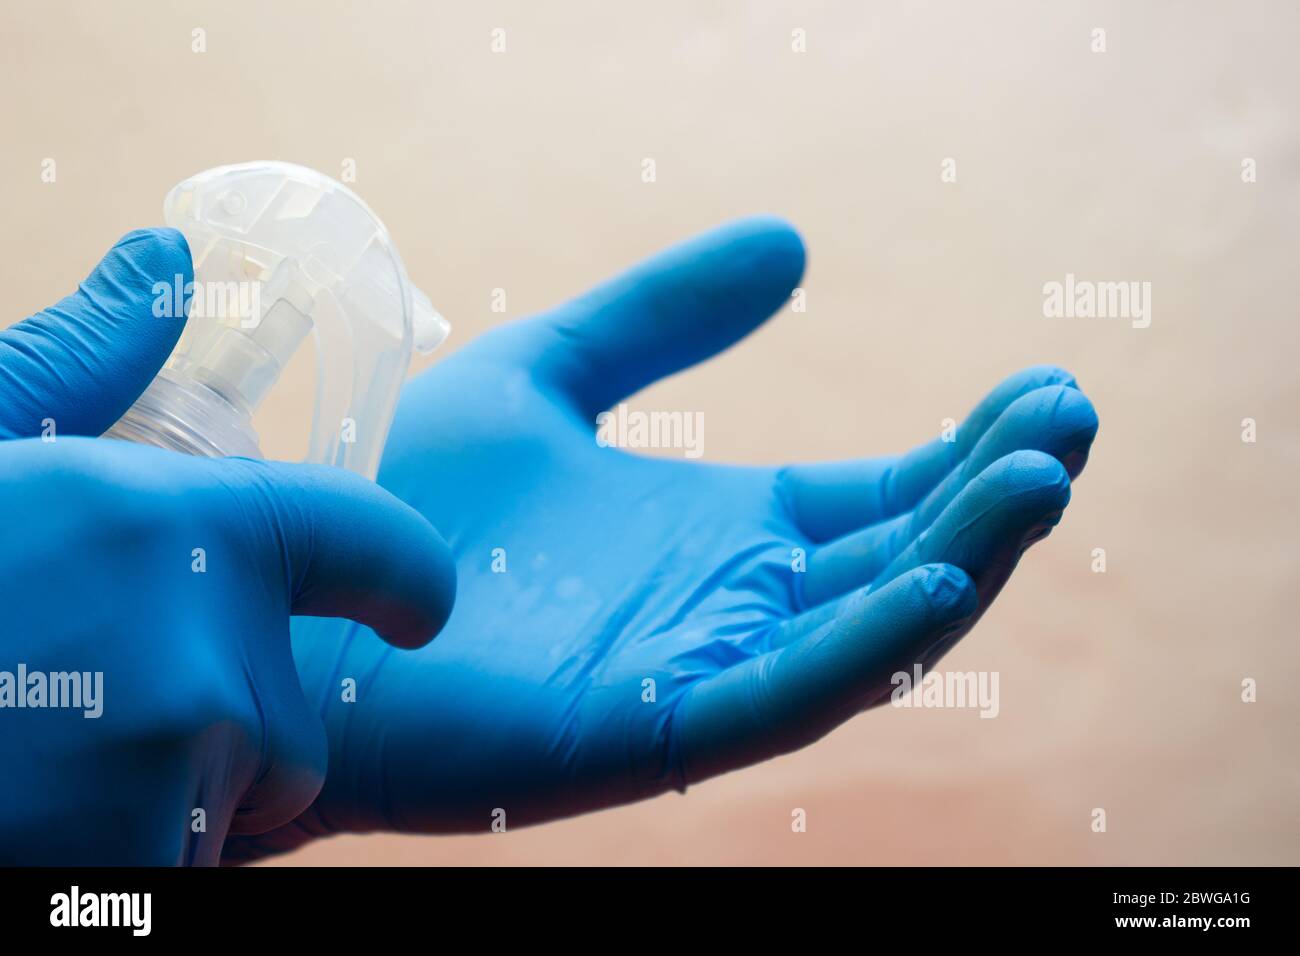 Mani in guanti medici maneggiare uno spray con un antisettico alcol - protezione contro l'influenza durante la quarantena, coronavirus, covid19 Foto Stock